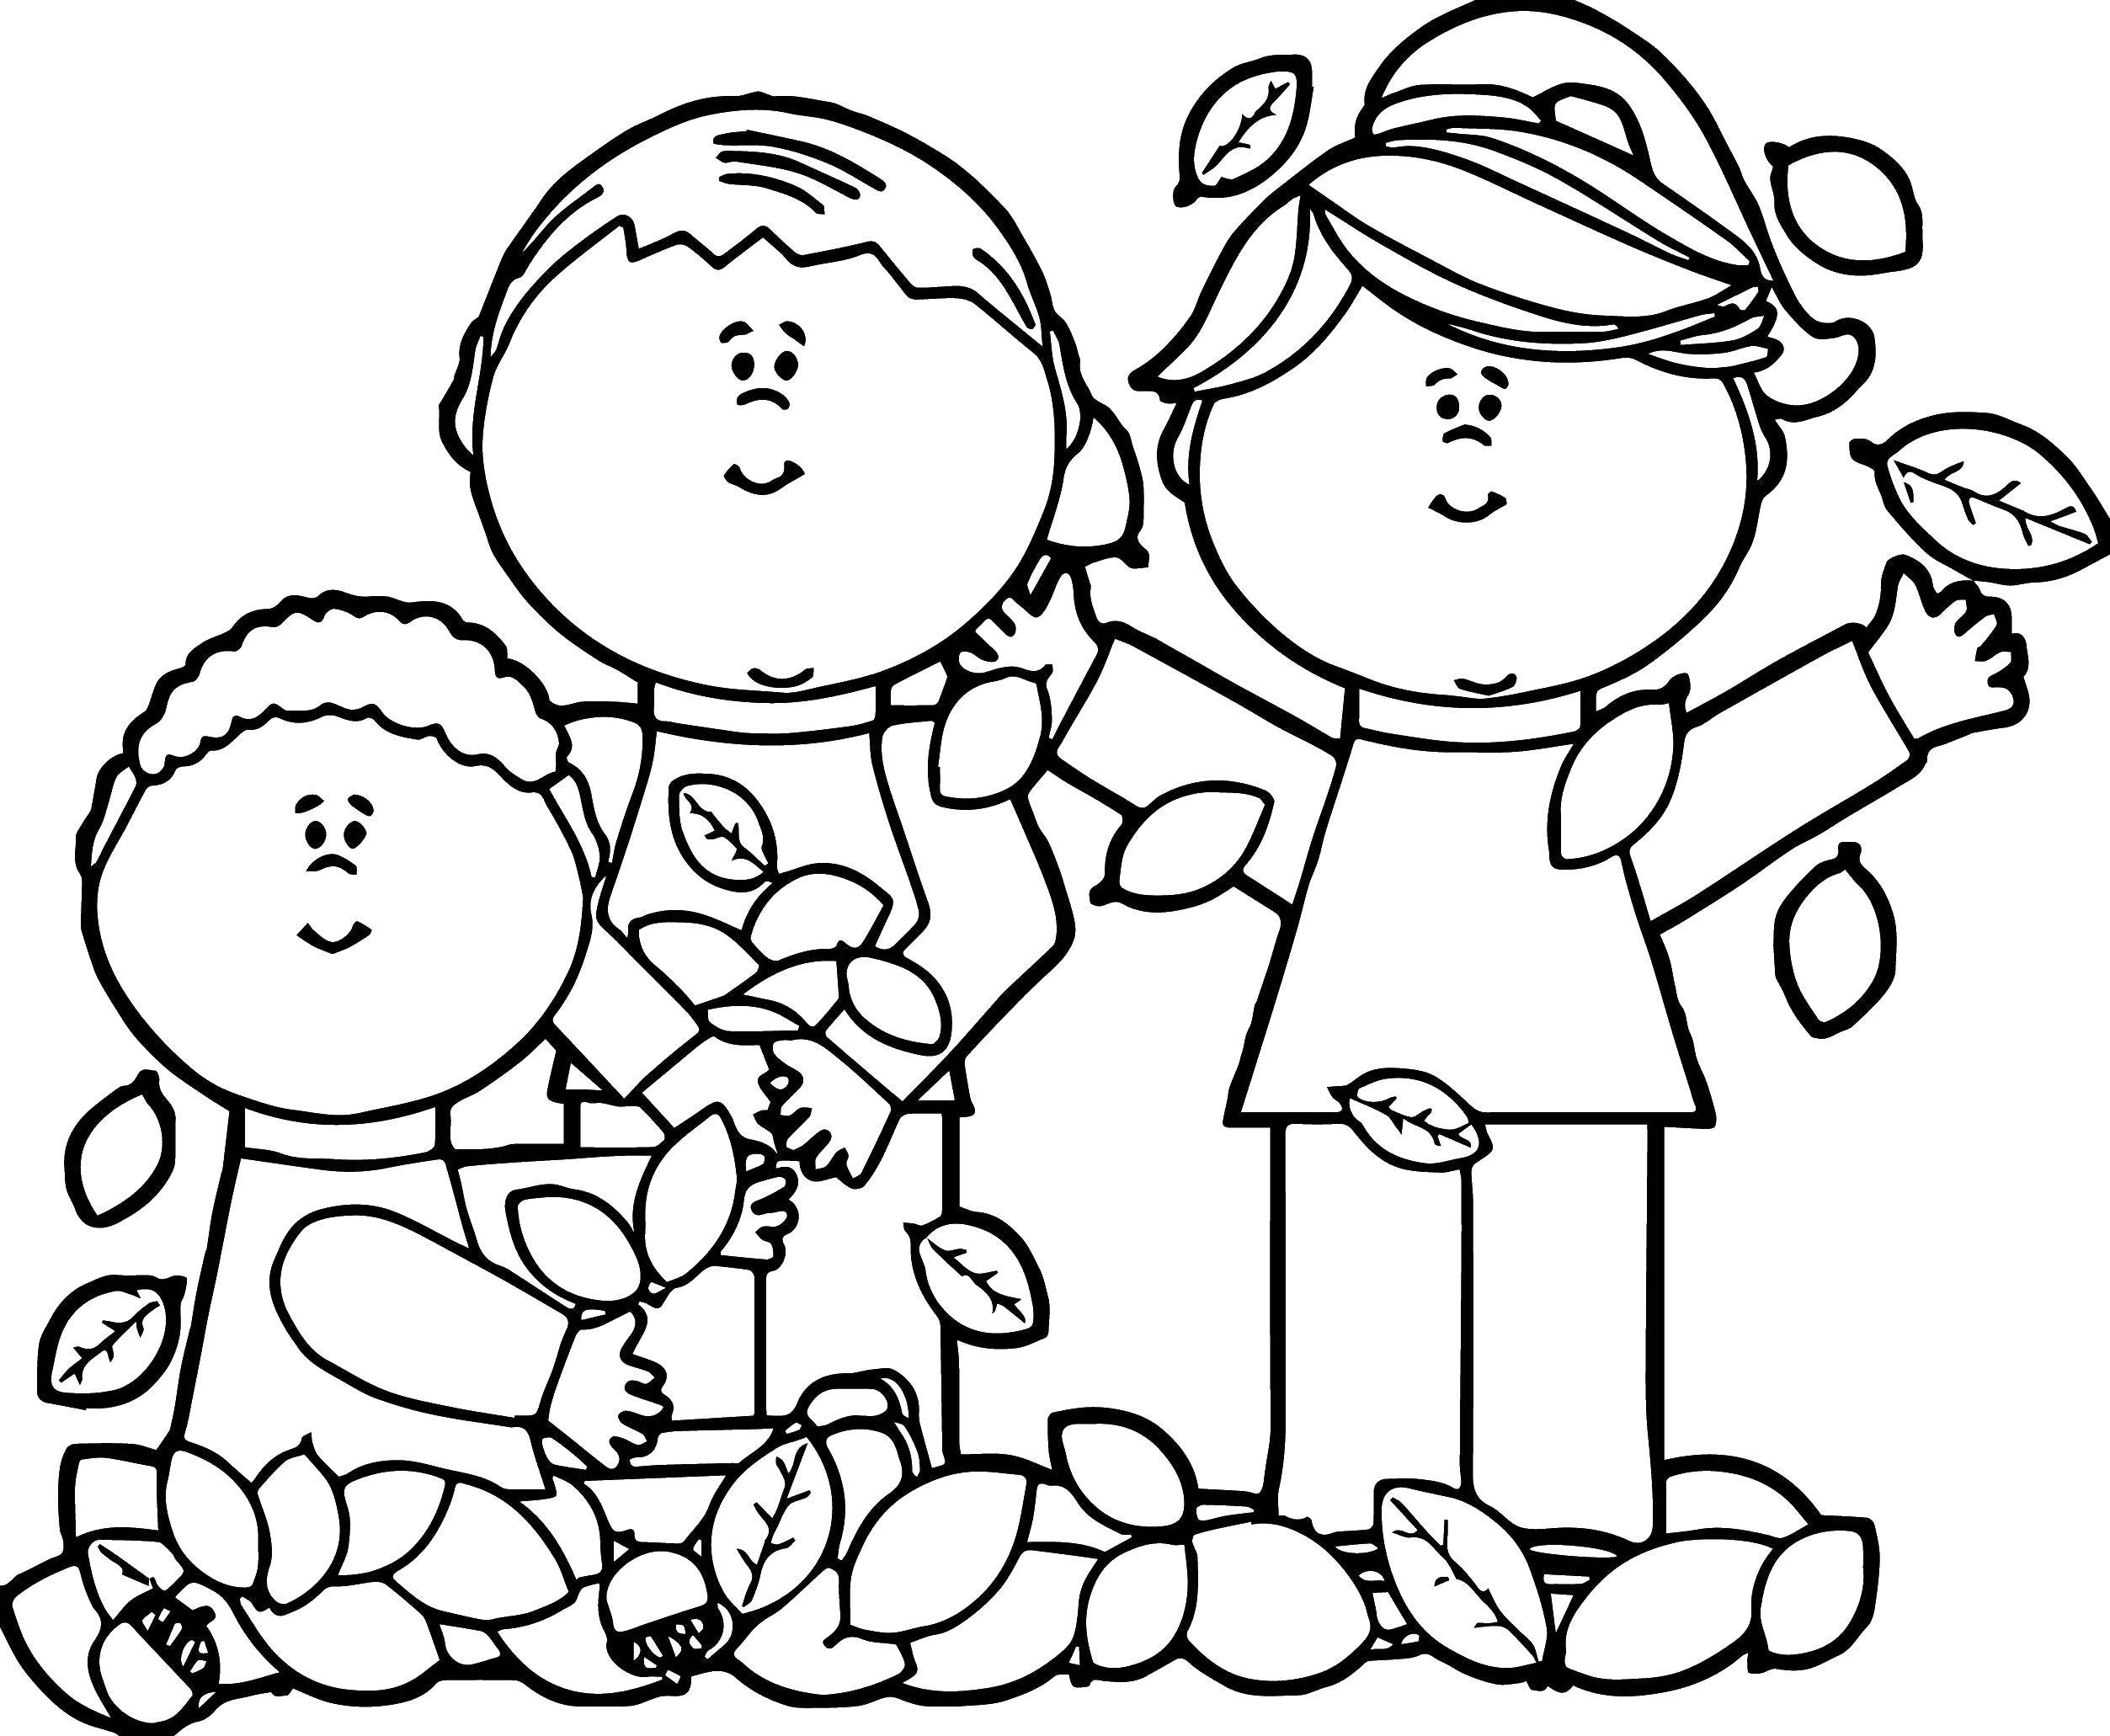 Название: Раскраска Семья и листья. Категория: Дети играют. Теги: осень, семья, листья, лошадь.